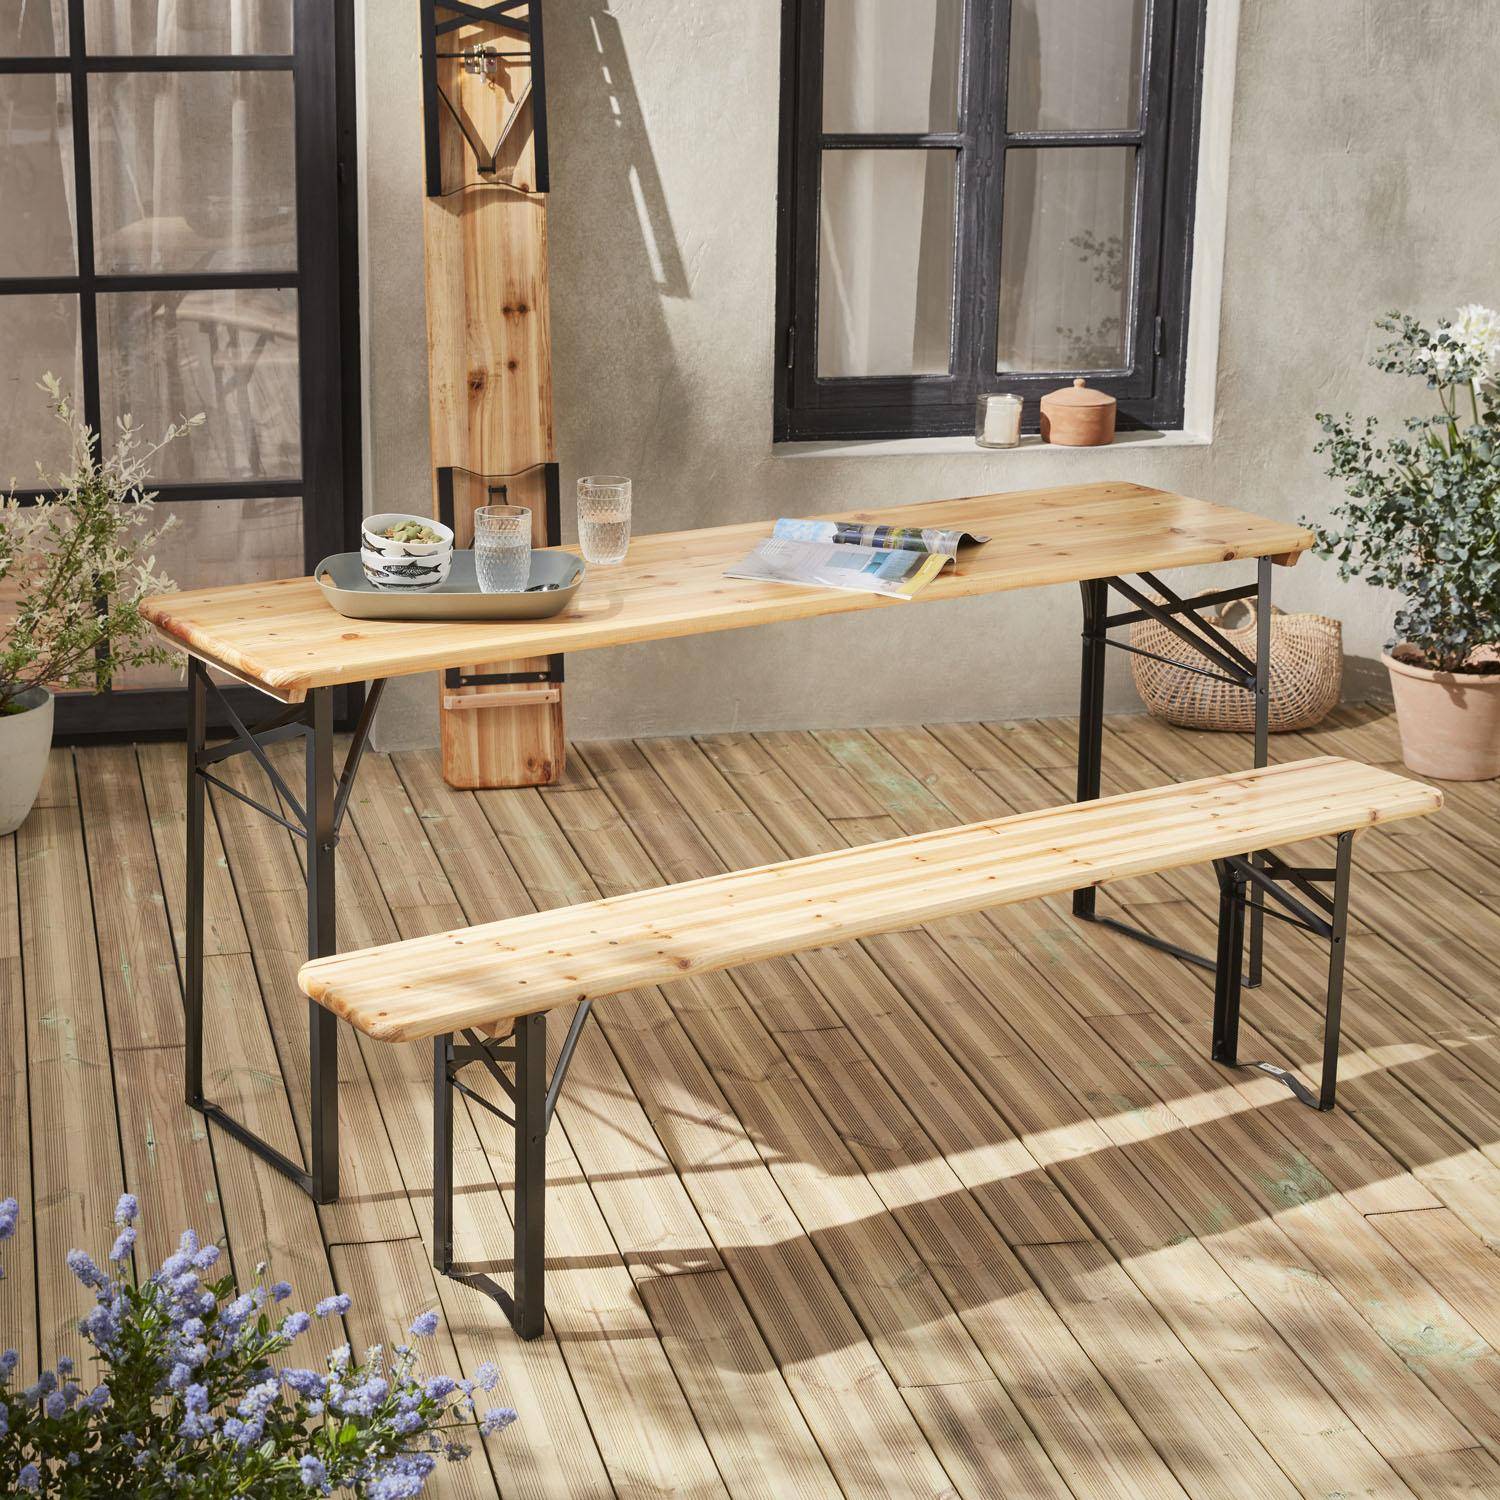 Table en bois 180cm avec 2 bancs – BAYONNE – Esprit brasserie, pliable, 6 personnes Photo2